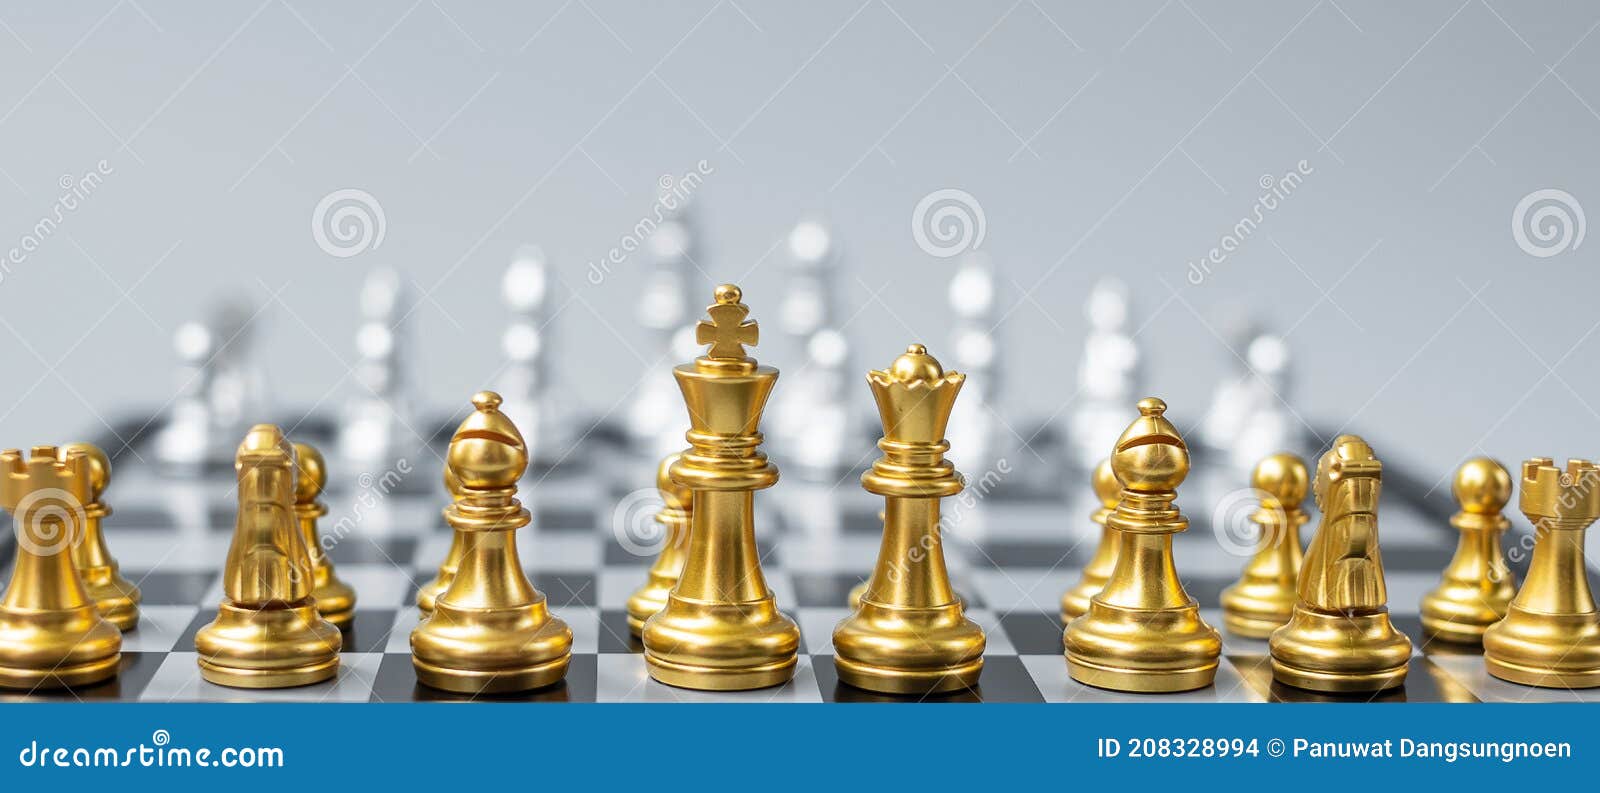 battle chess rook